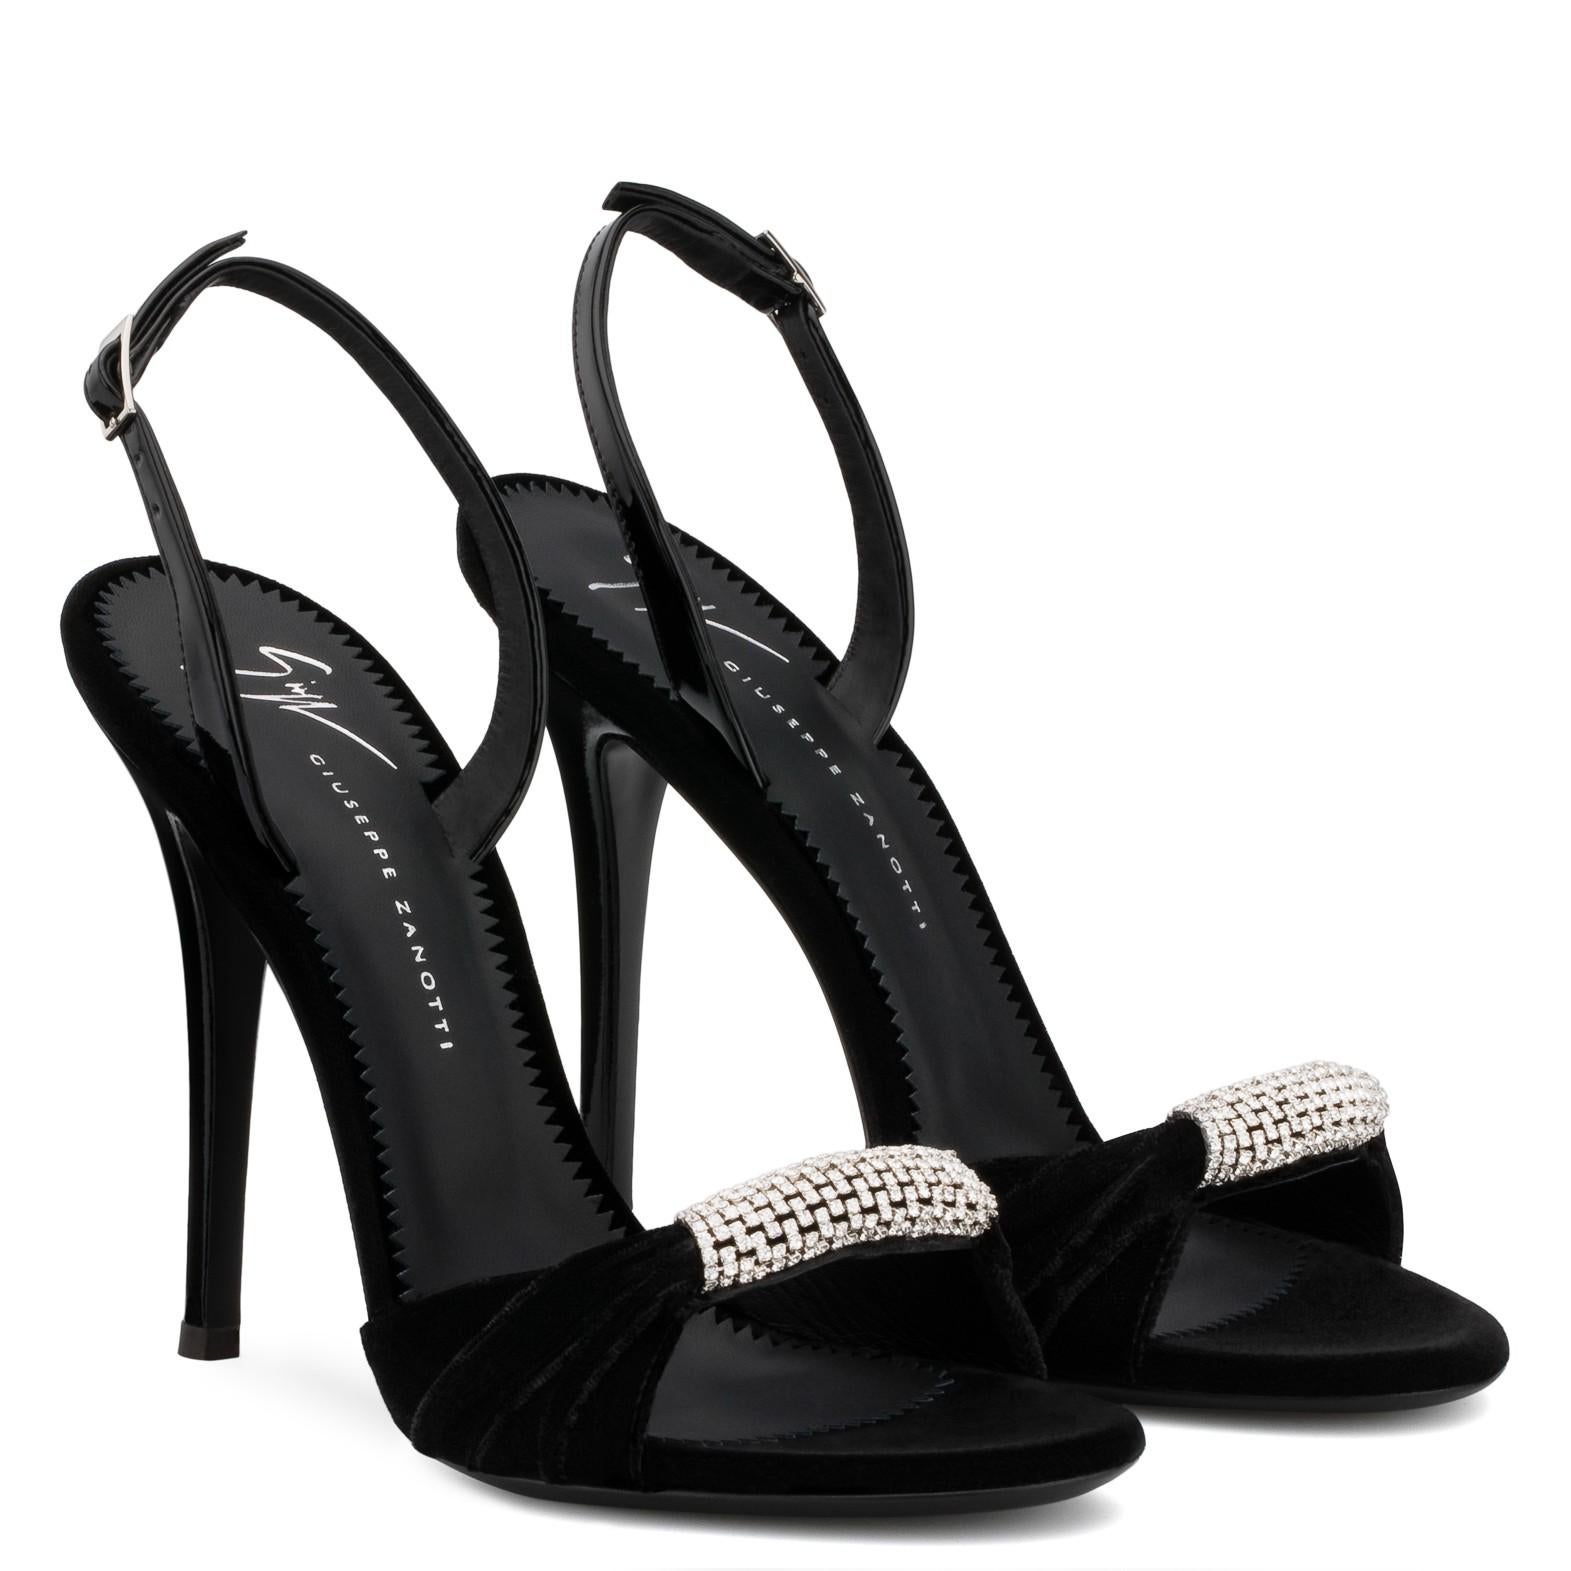 Giuseppe Zanotti NEW Black Patent Crystal Velvet Evening Sandals Heels in Box 1